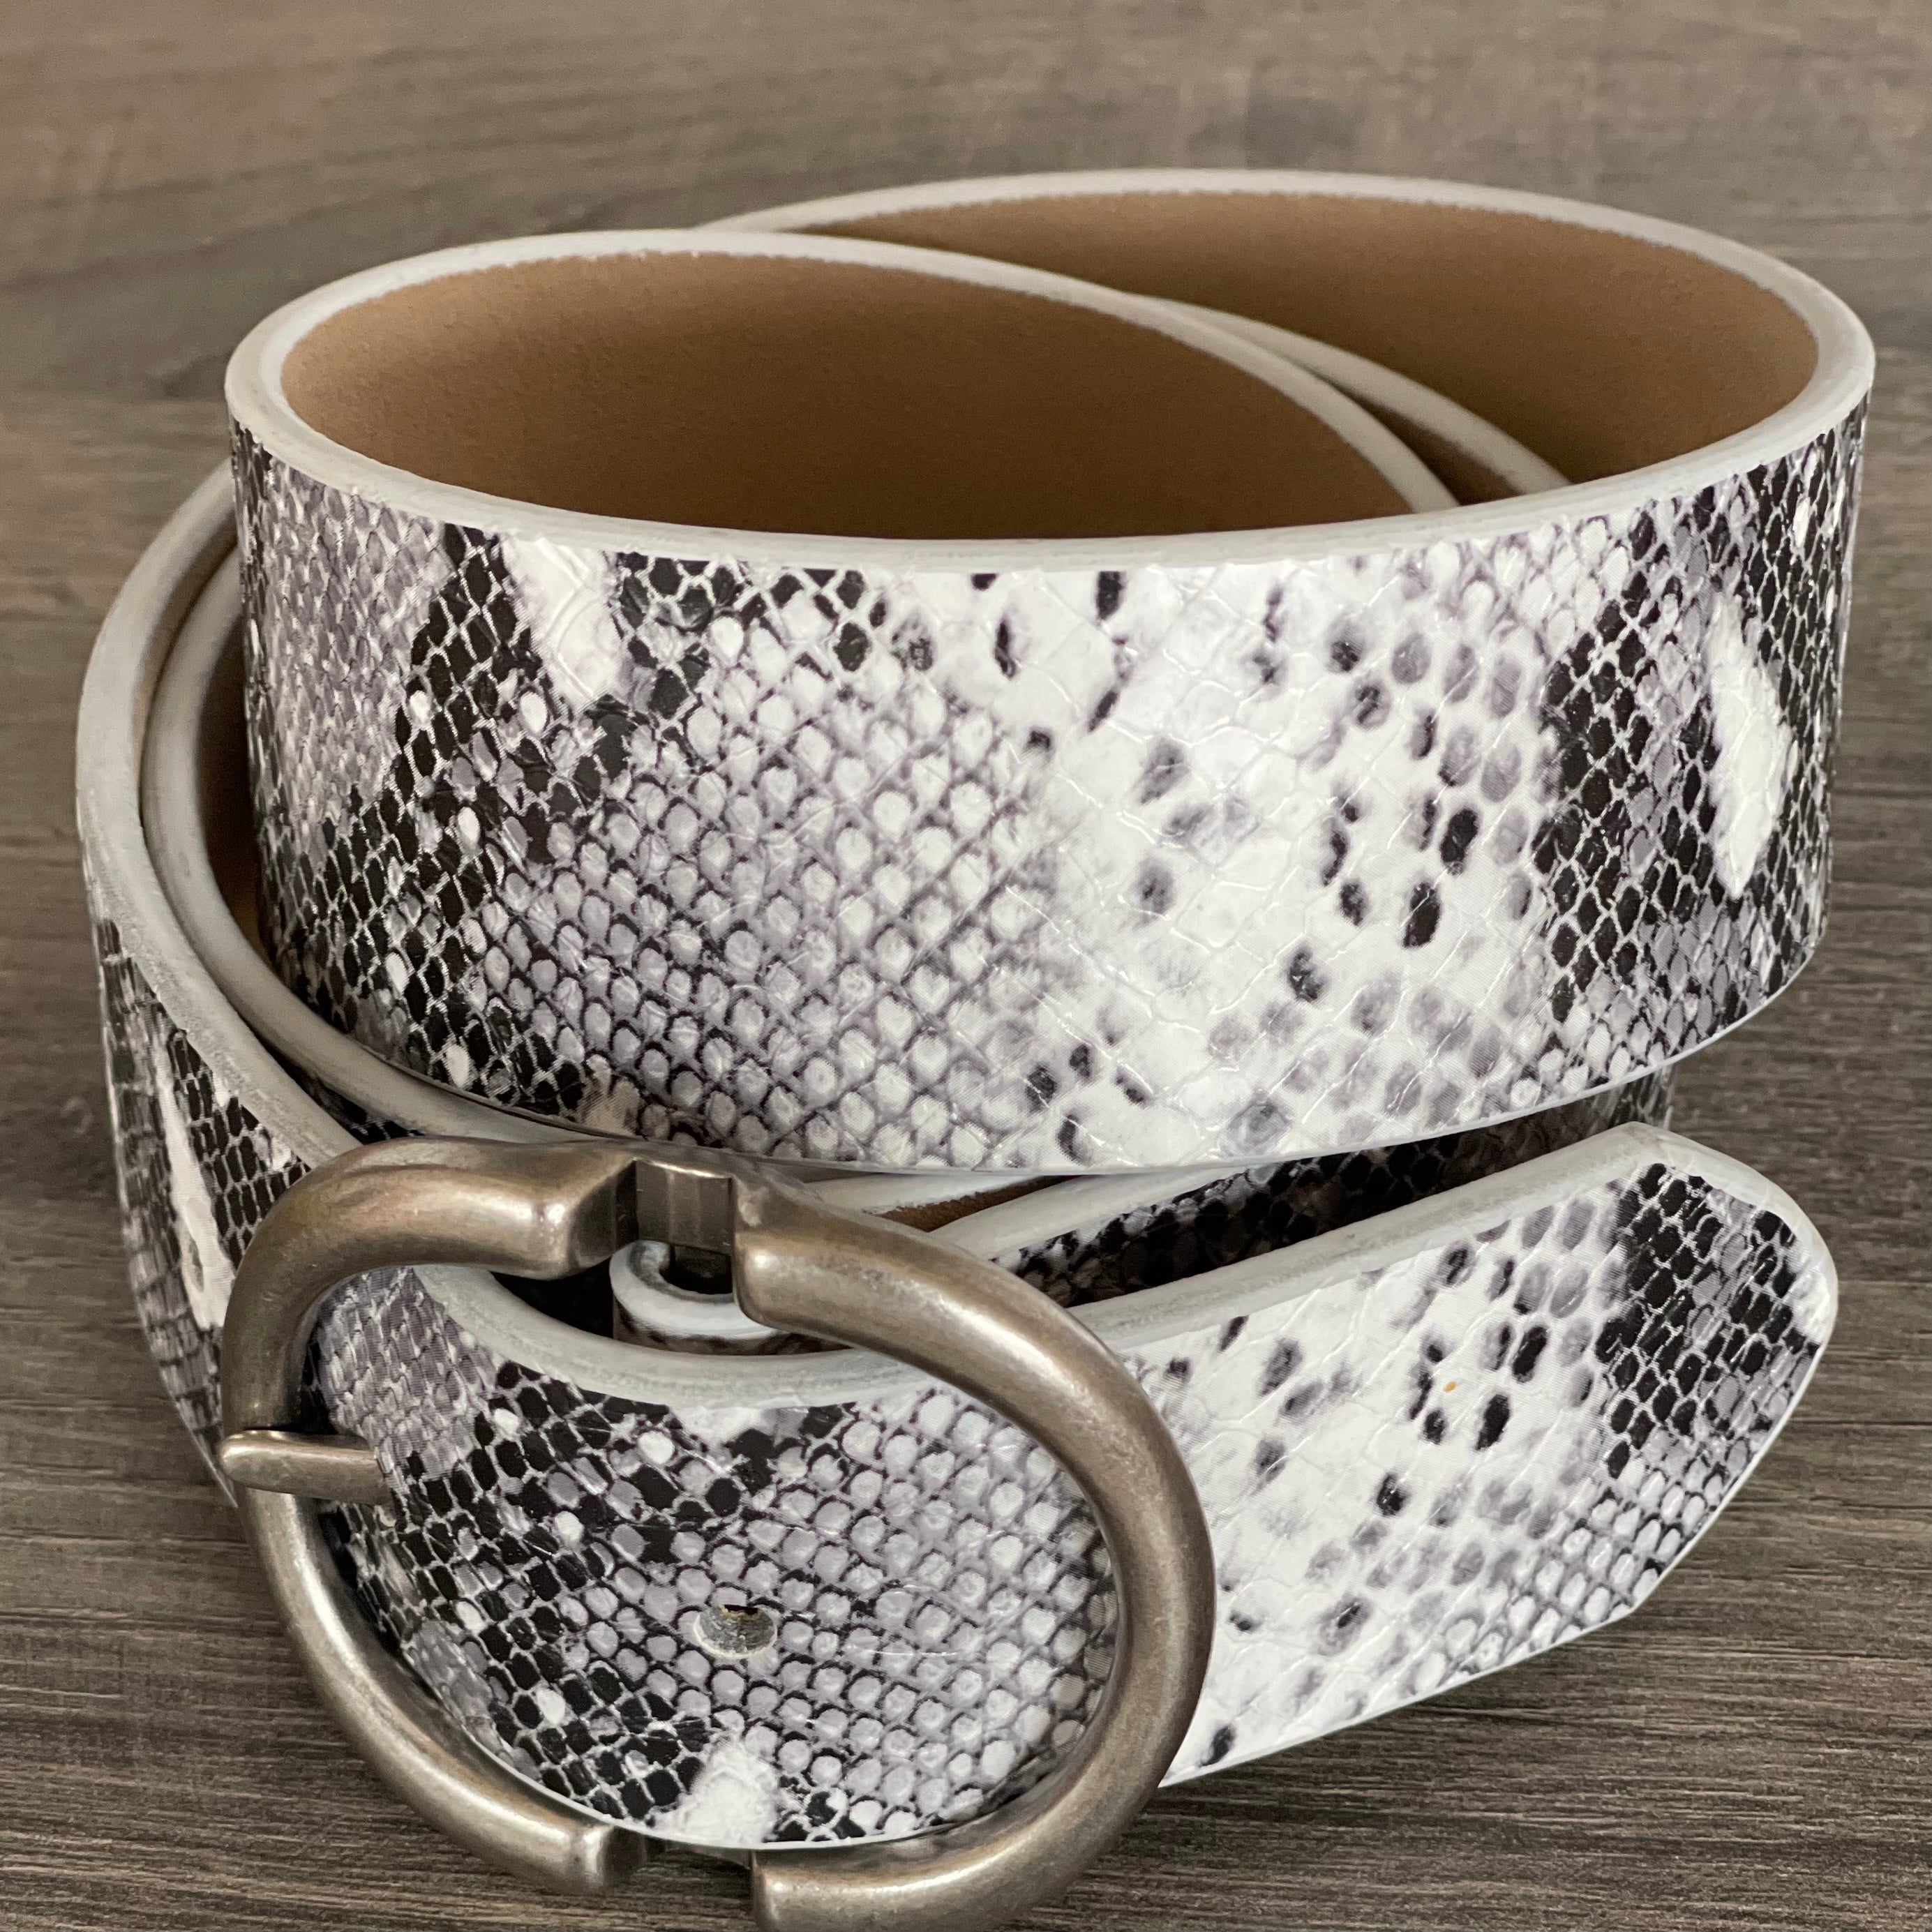 Women's Snakeskin Print Belt with Silver Buckle